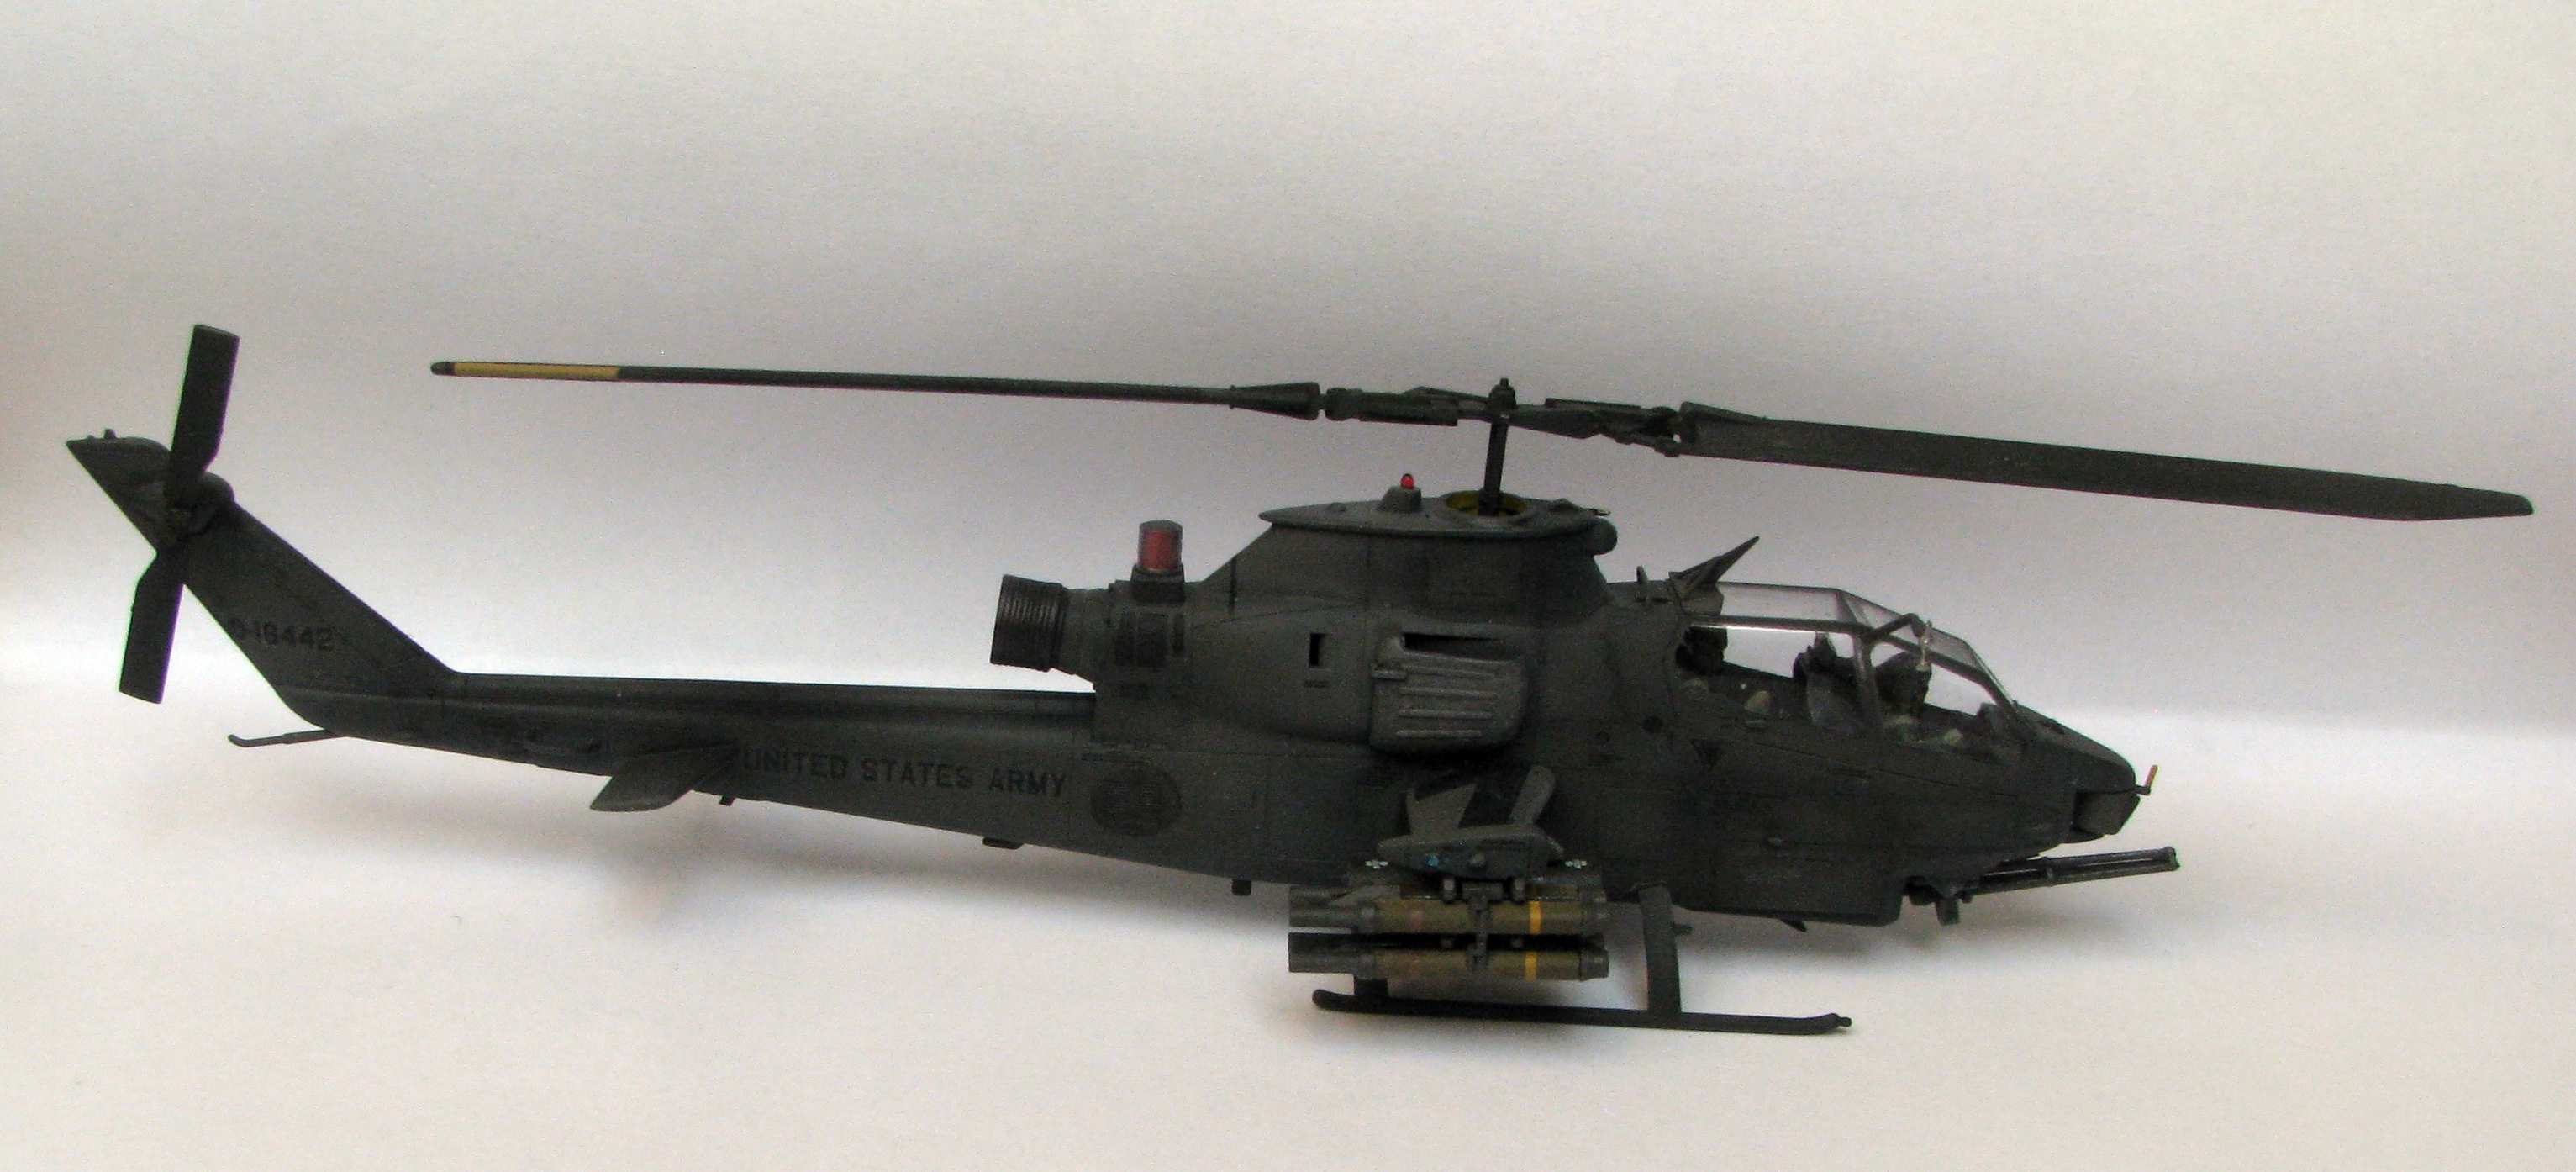 1:72 Hasegawa AH-1S by Pawel